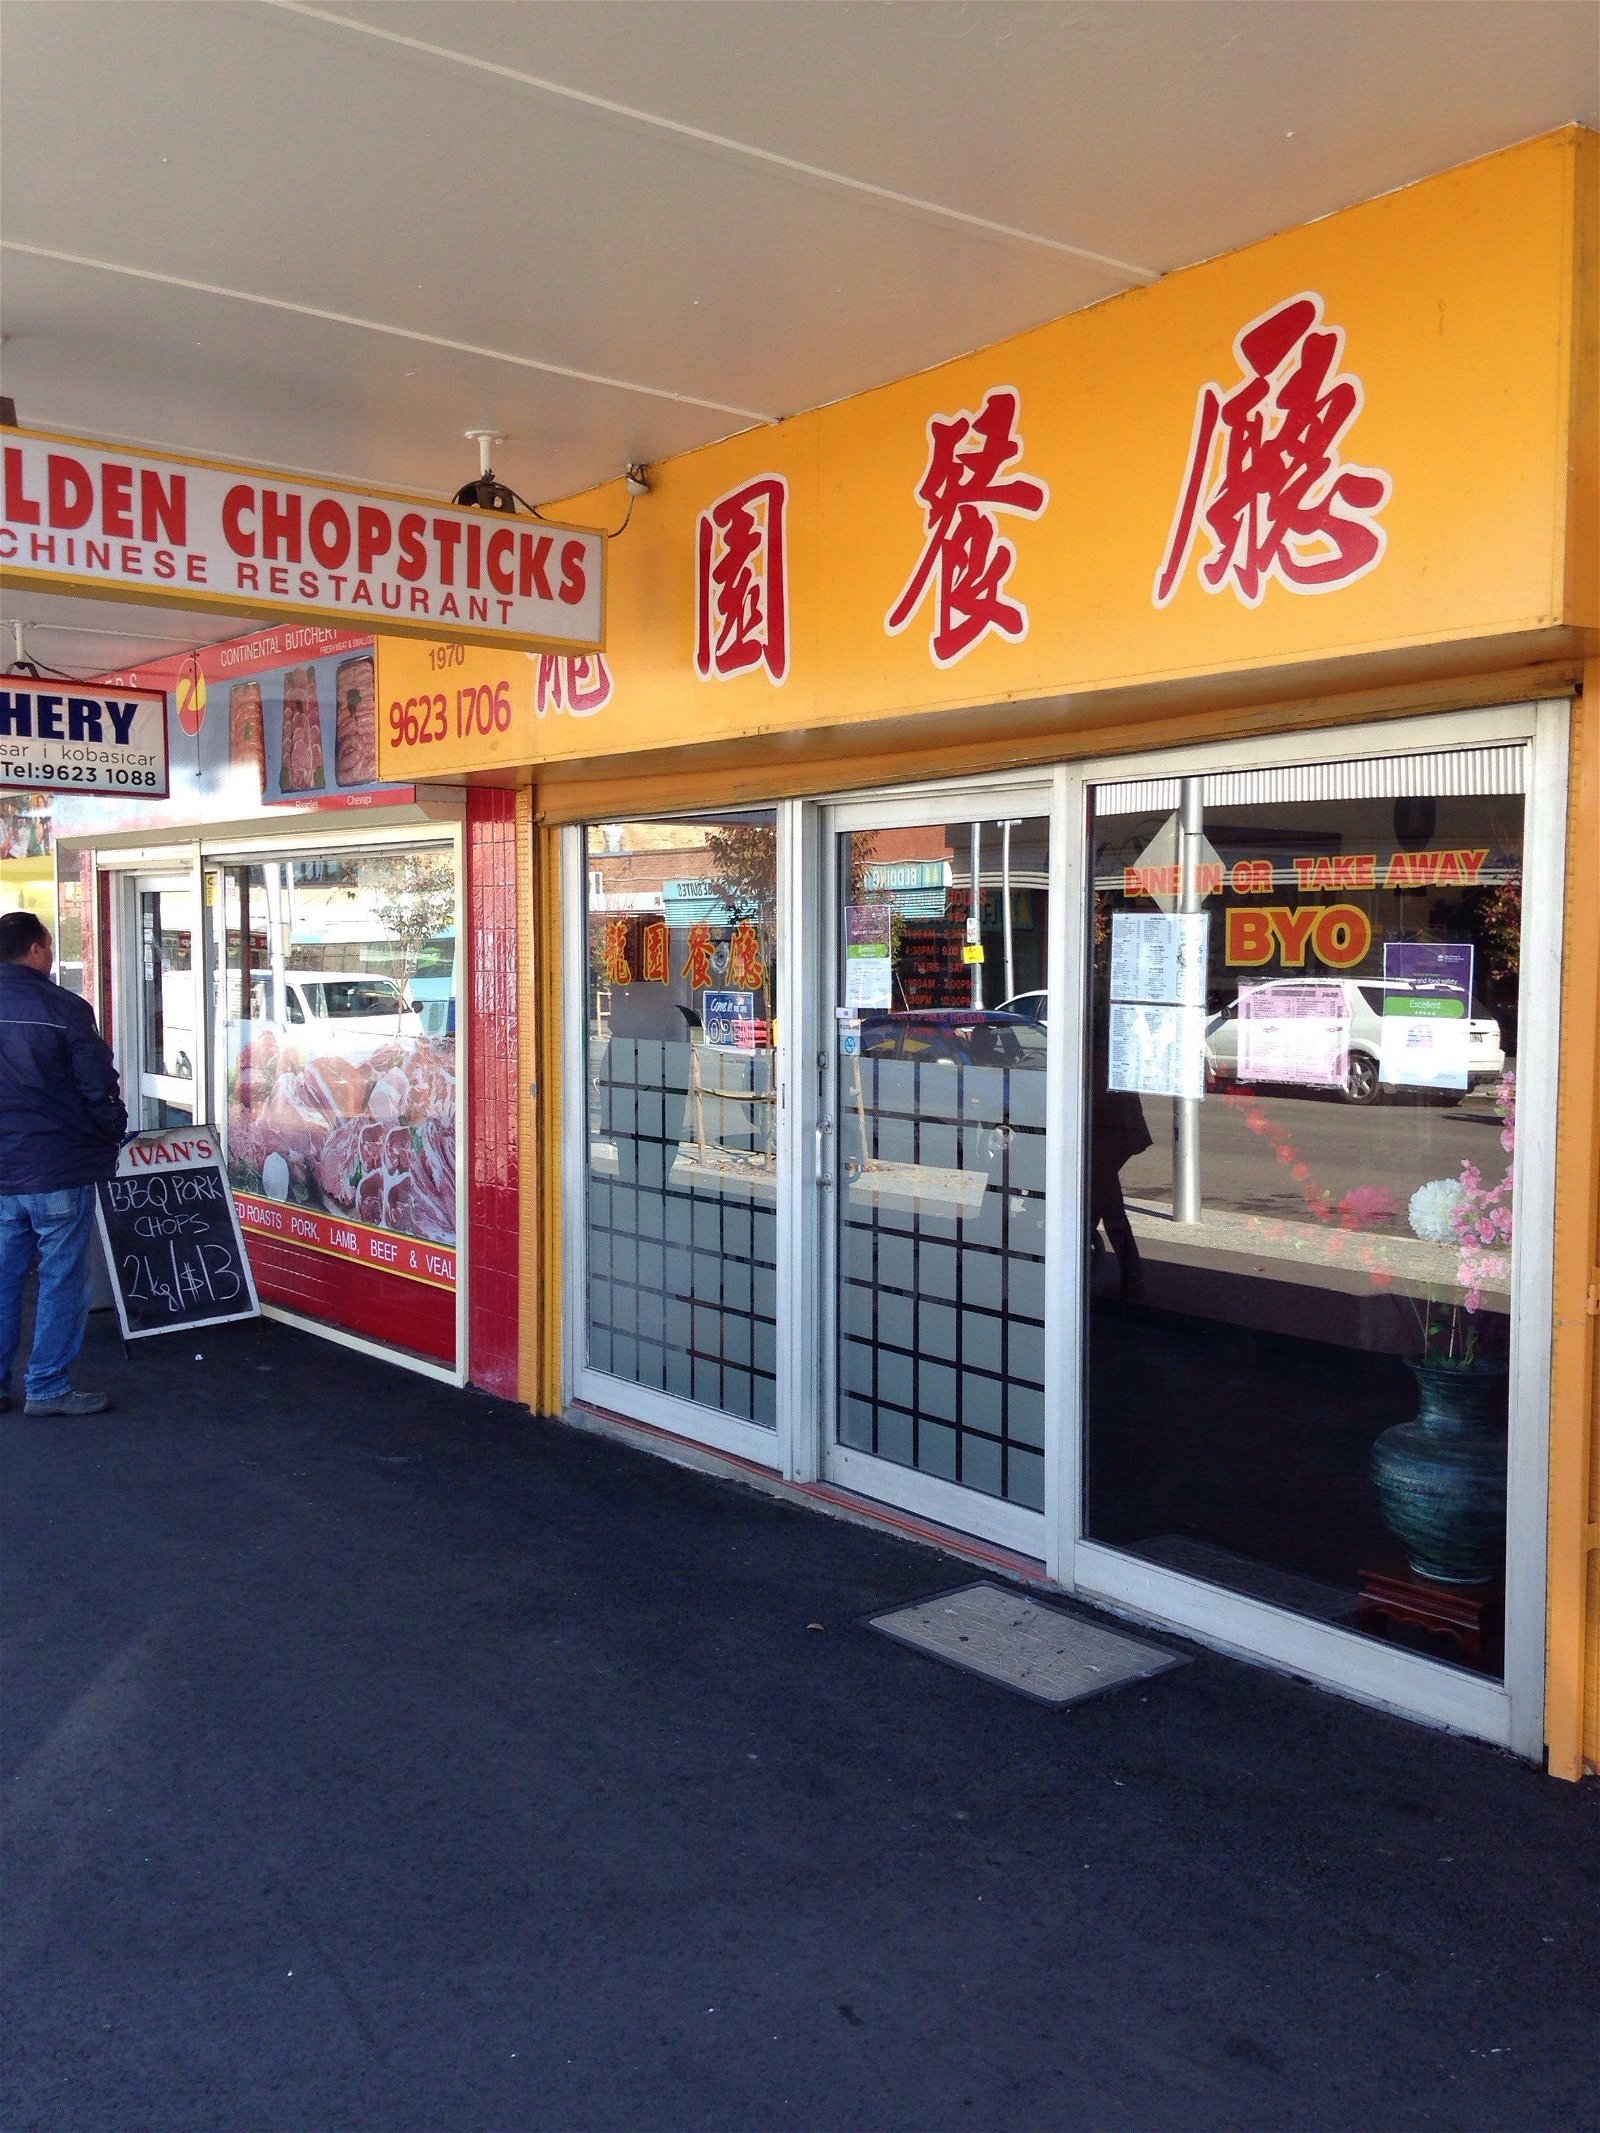 Golden Chopsticks - Pubs Sydney